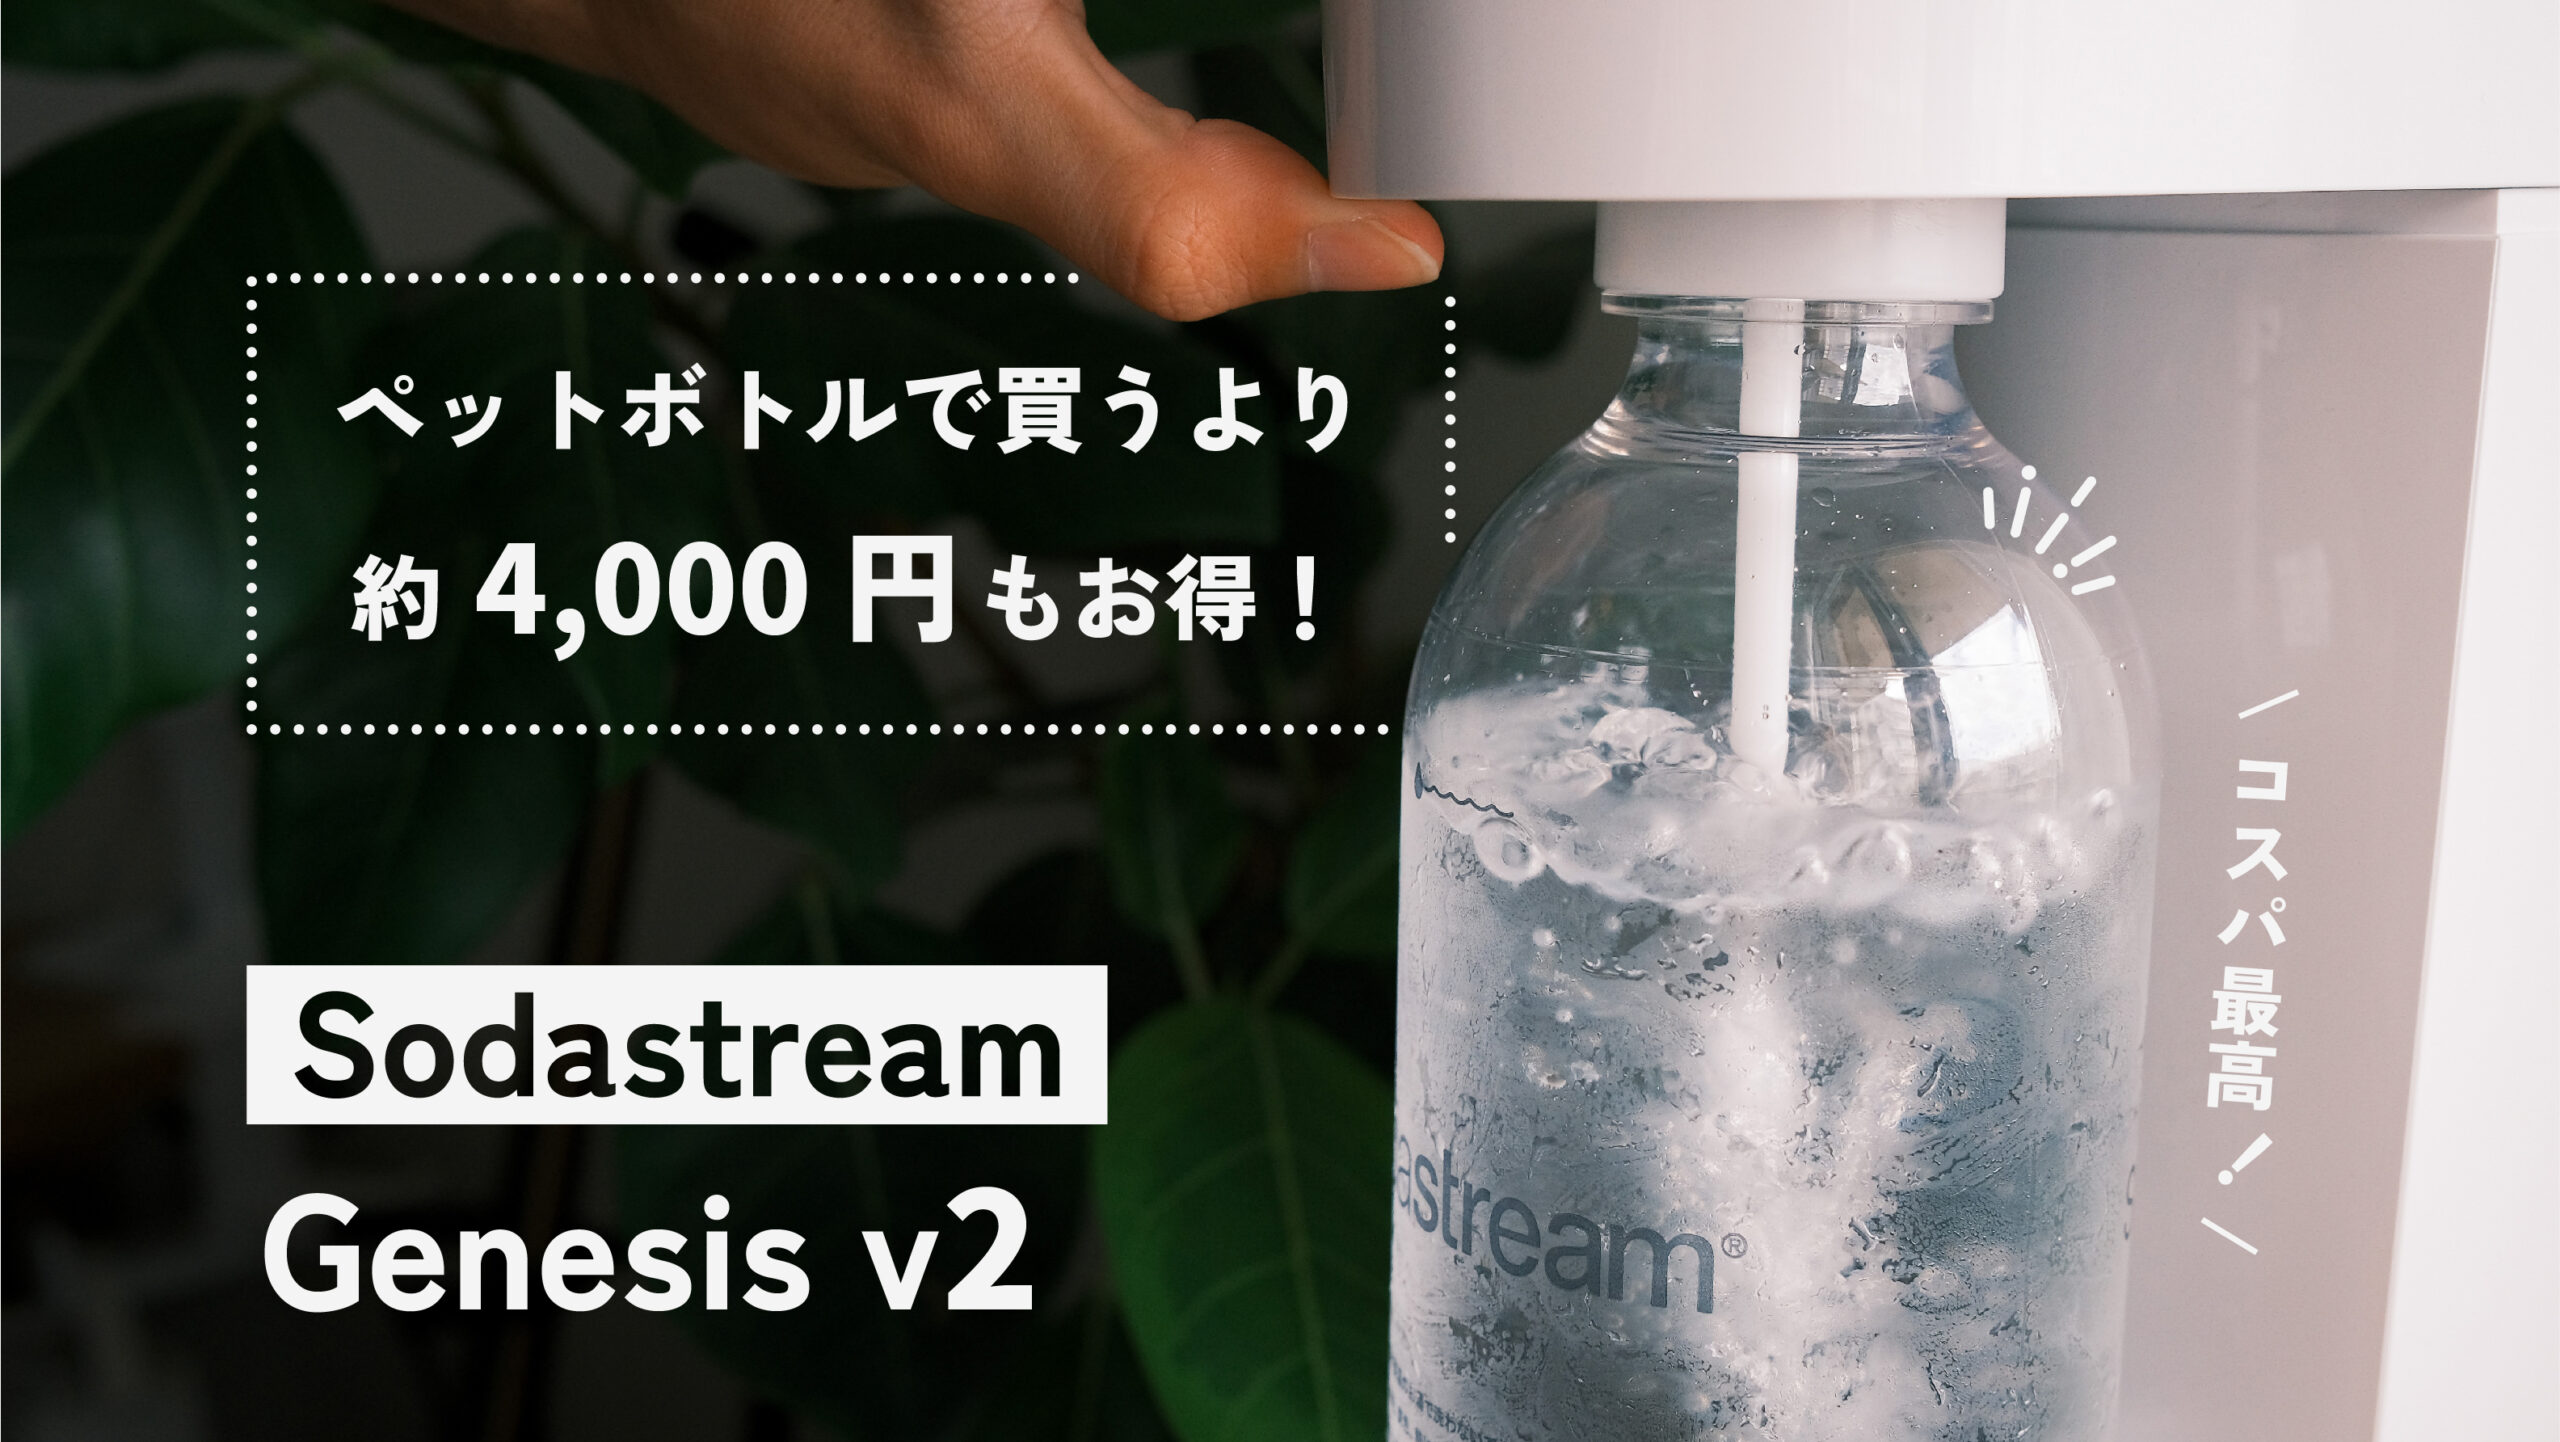 ソーダストリームの家庭用炭酸水メーカー『Genesis v2』のコスパが最高 | ayalog